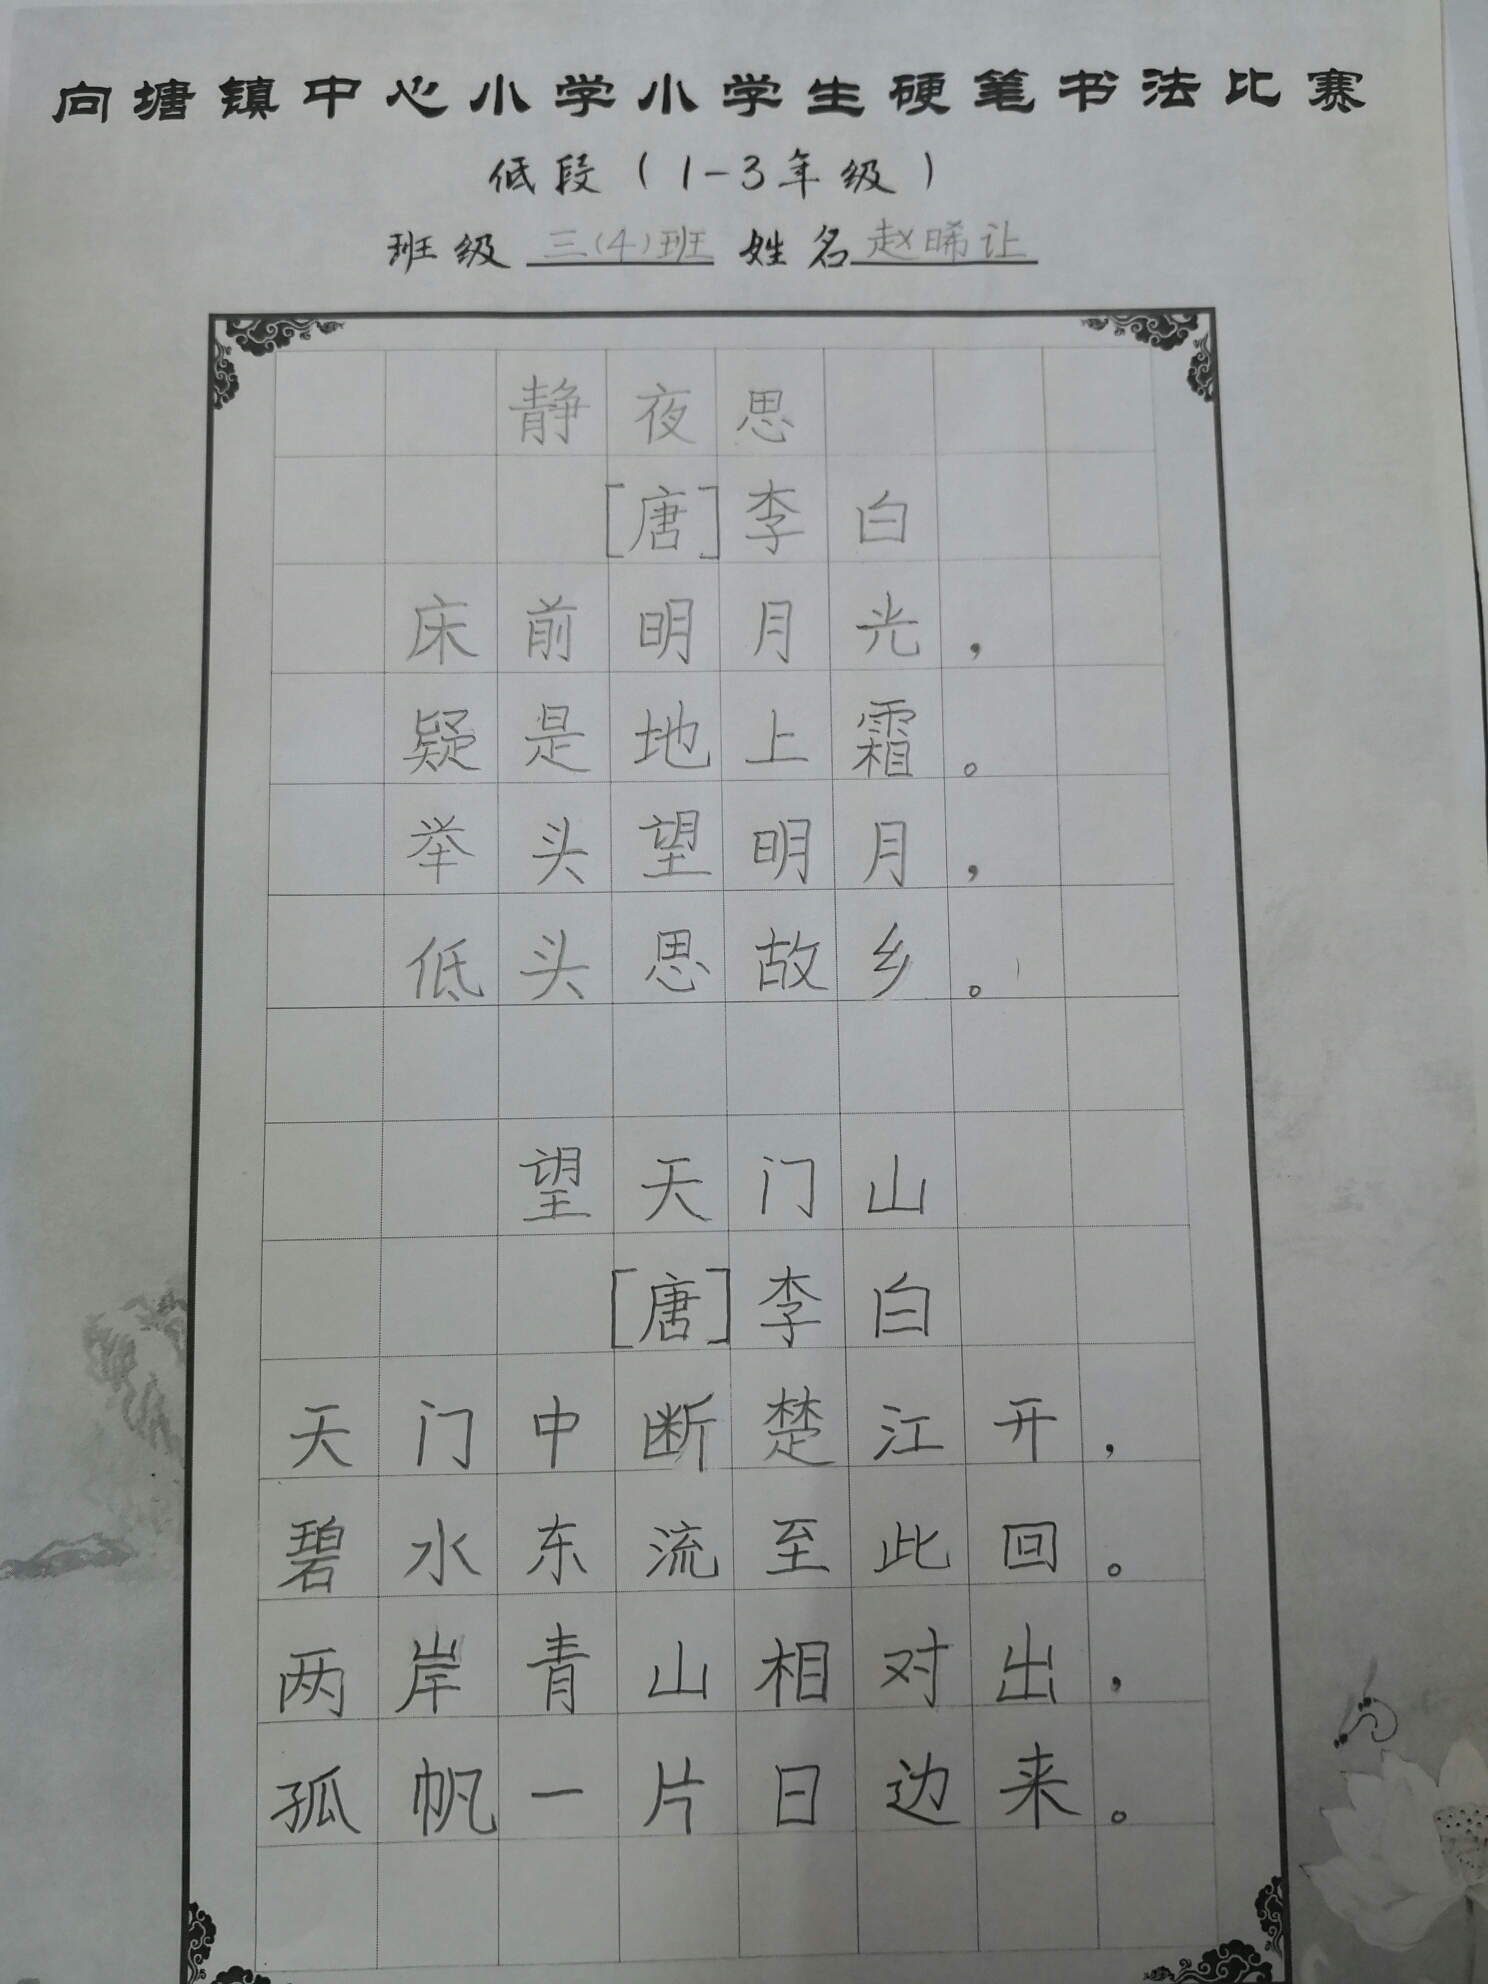 传承中华文化弘扬国粹魅力――向塘中小举办小学生硬笔书法比赛